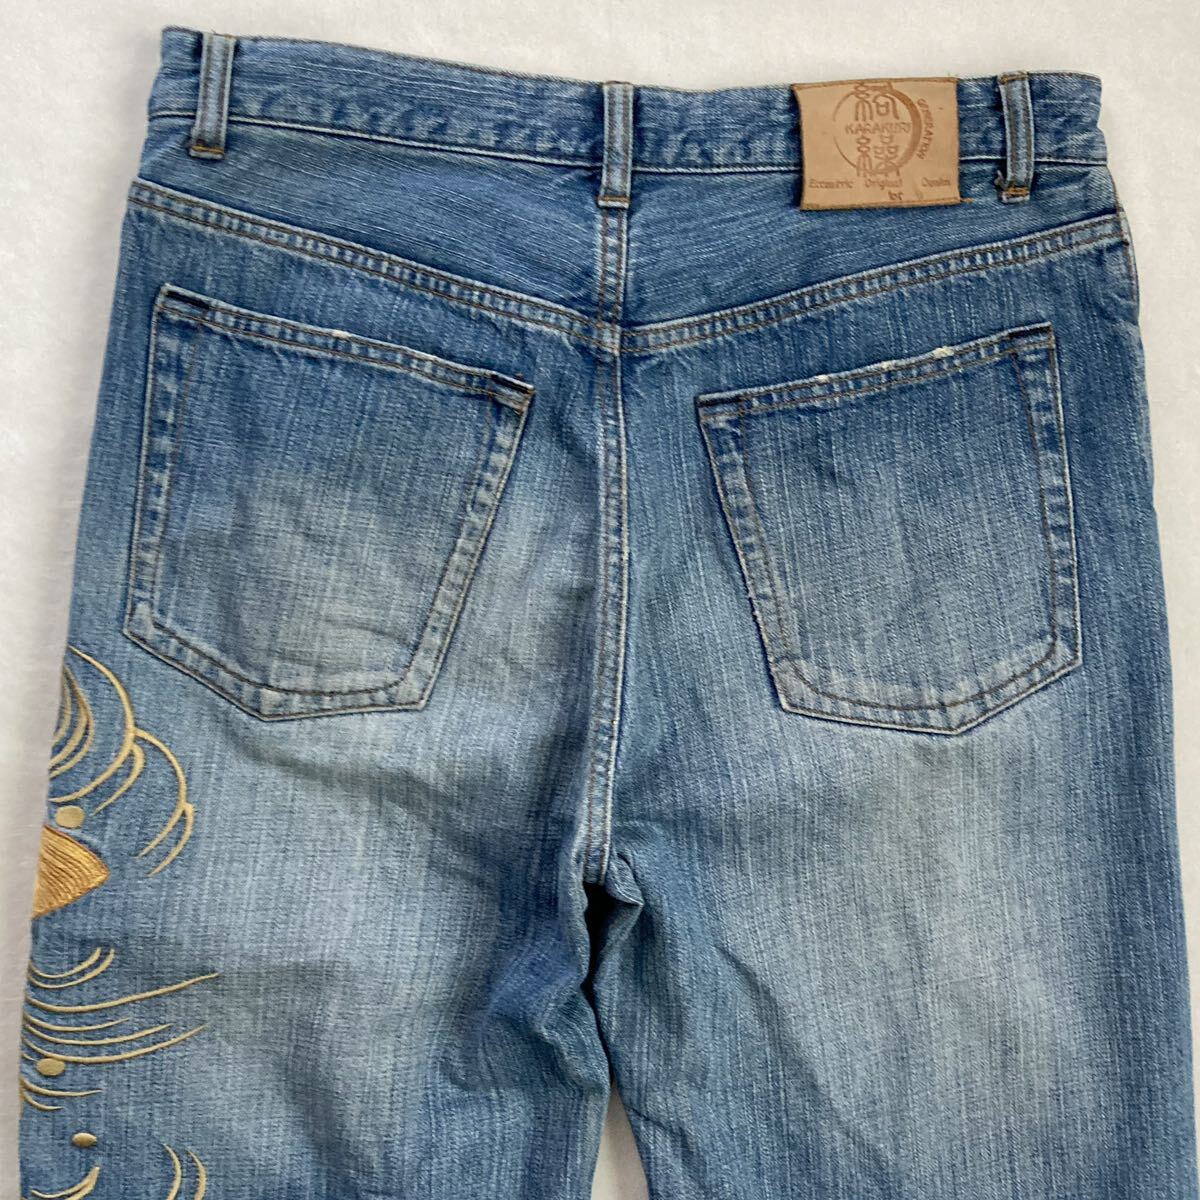 .. душа джинсы Denim брюки мир рисунок вышивка обыкновенный карп 